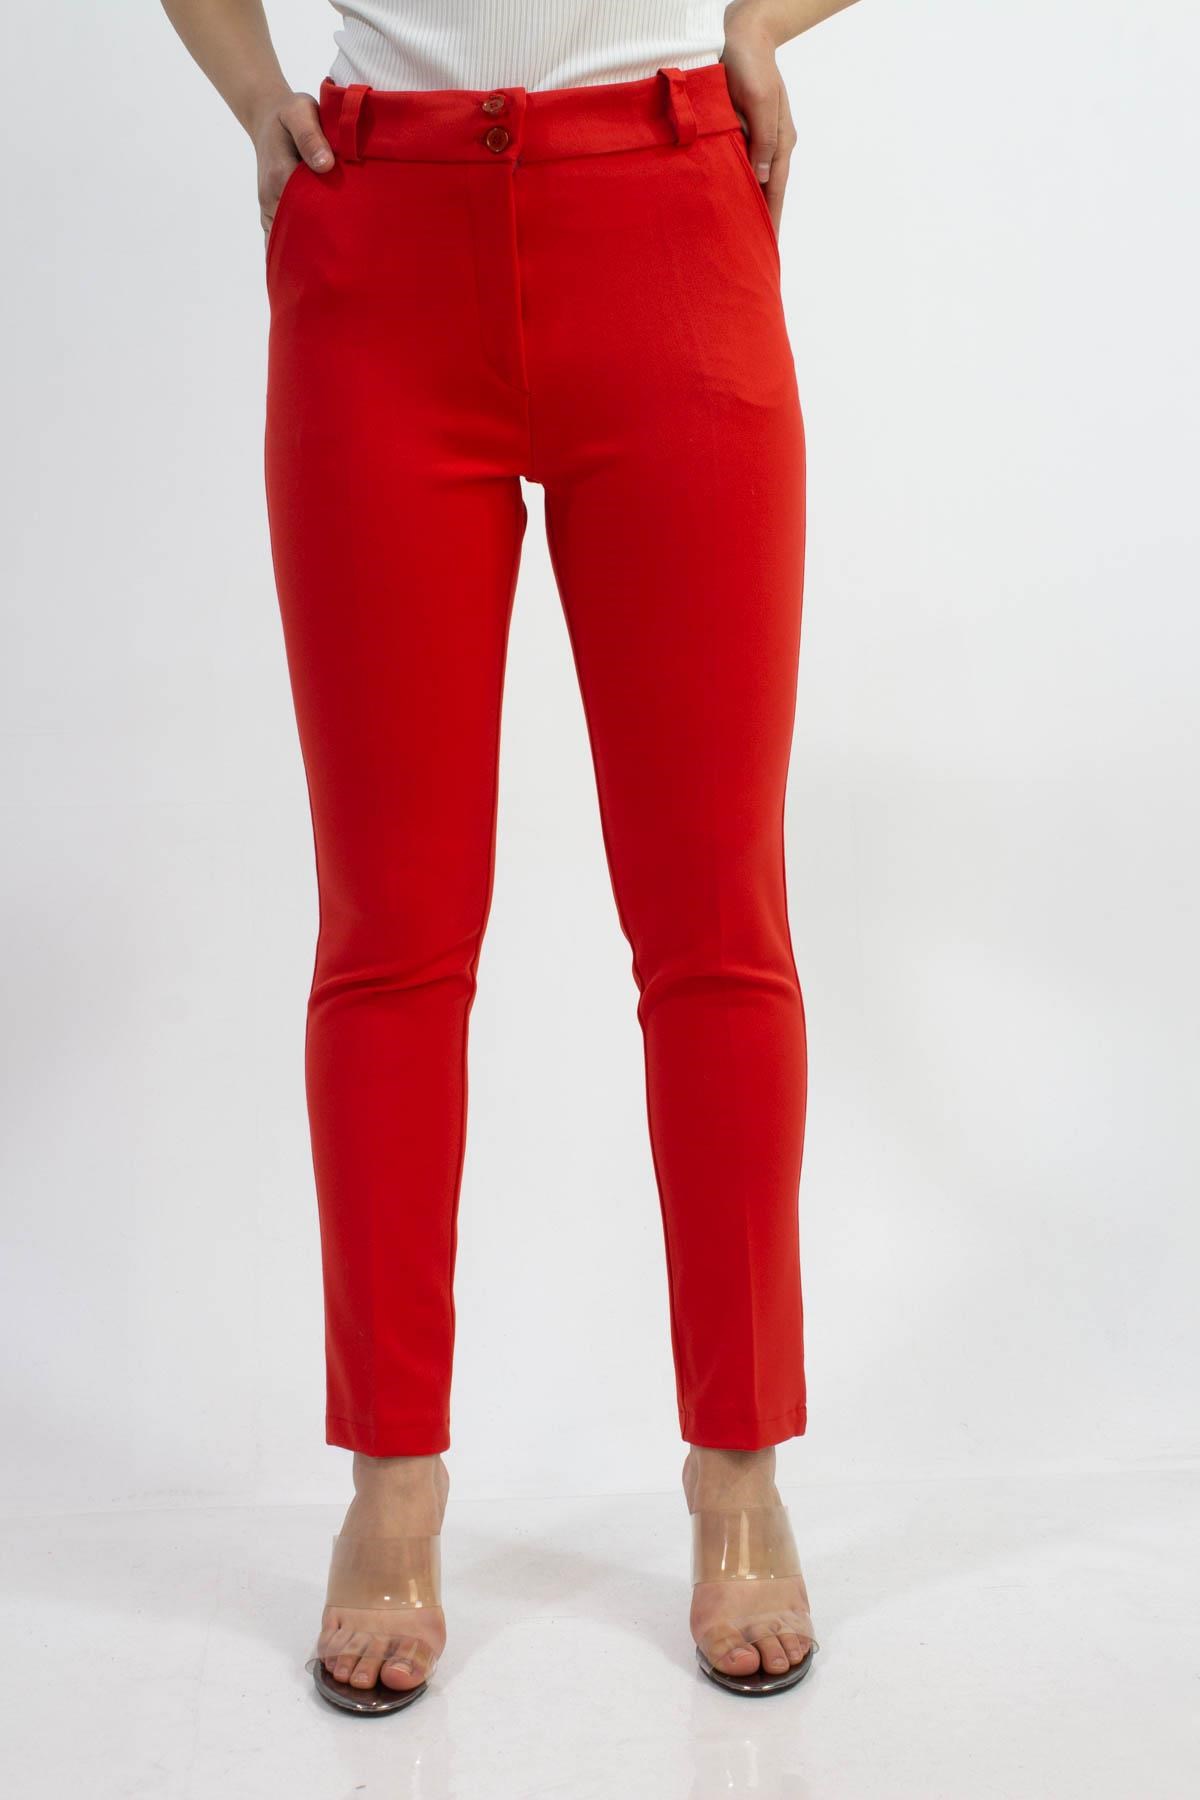 Sermoda Çift Düğmeli Kumaş Kadın Pantolon 1019 Kırmızı